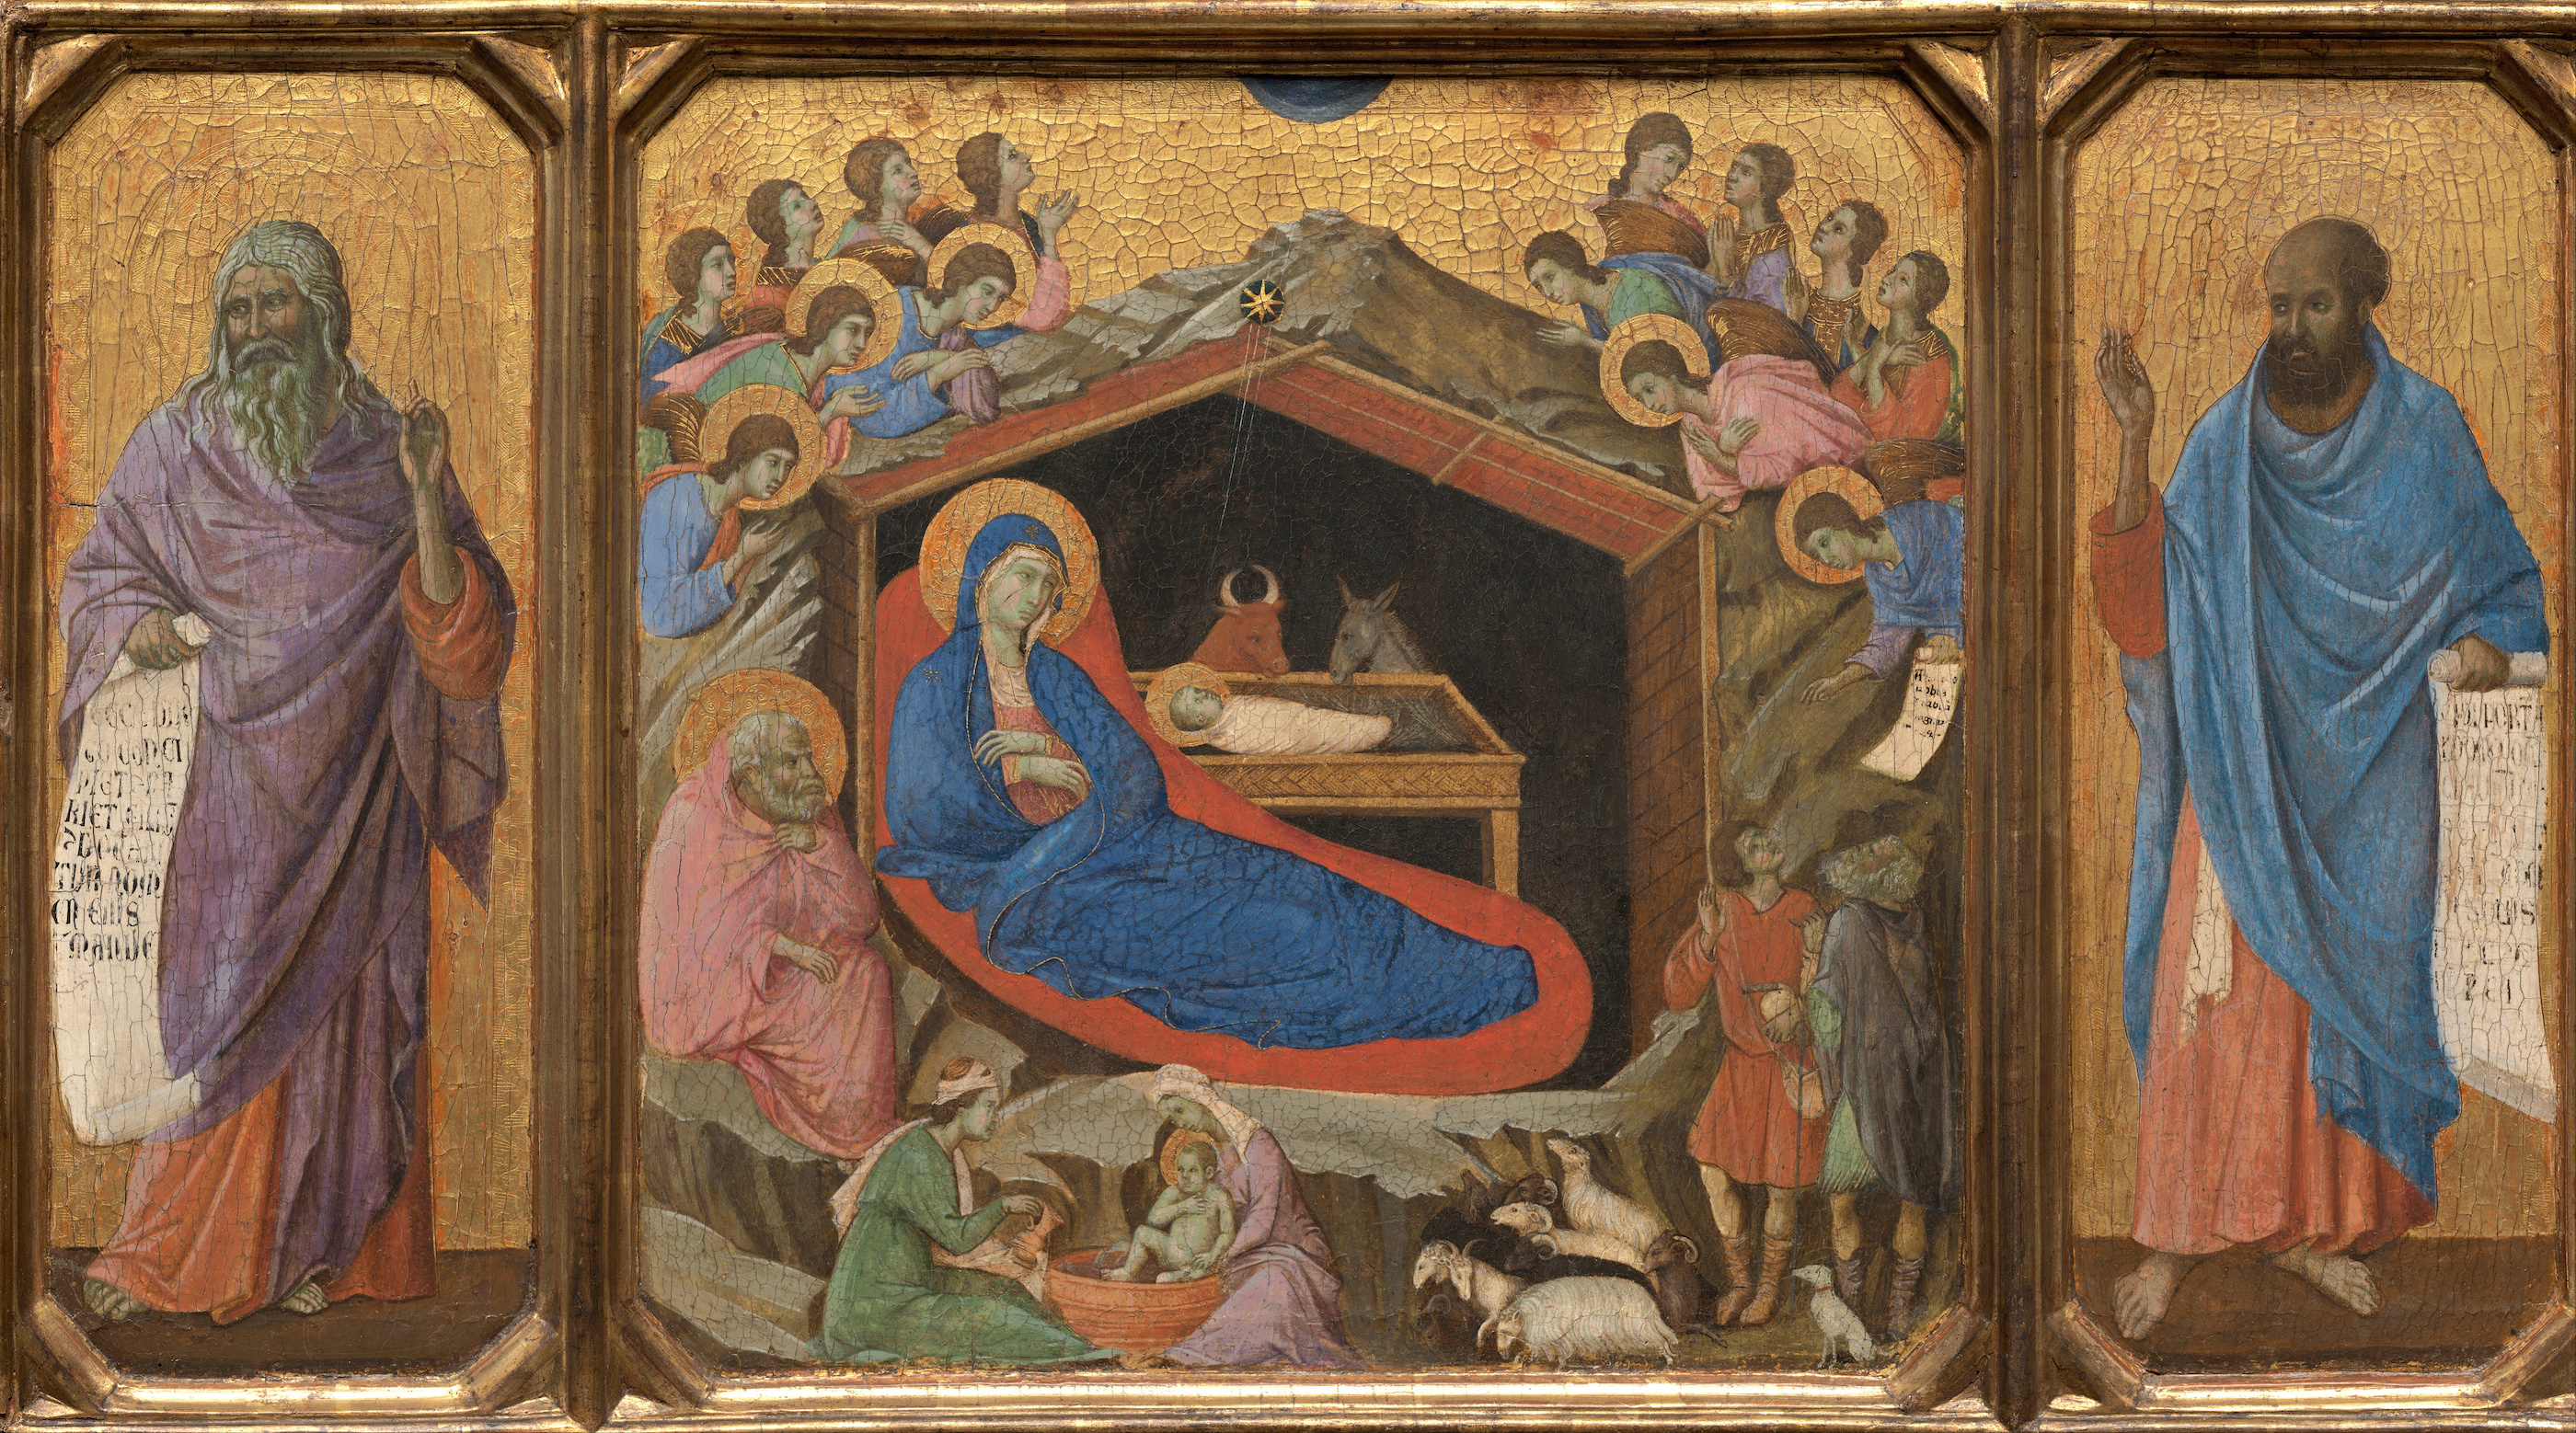 Nașterea Domnului cu profeții Isaia și Ezechiel by Duccio di Buoninsegna - 1308 - 1311 - 870 x 480 cm 